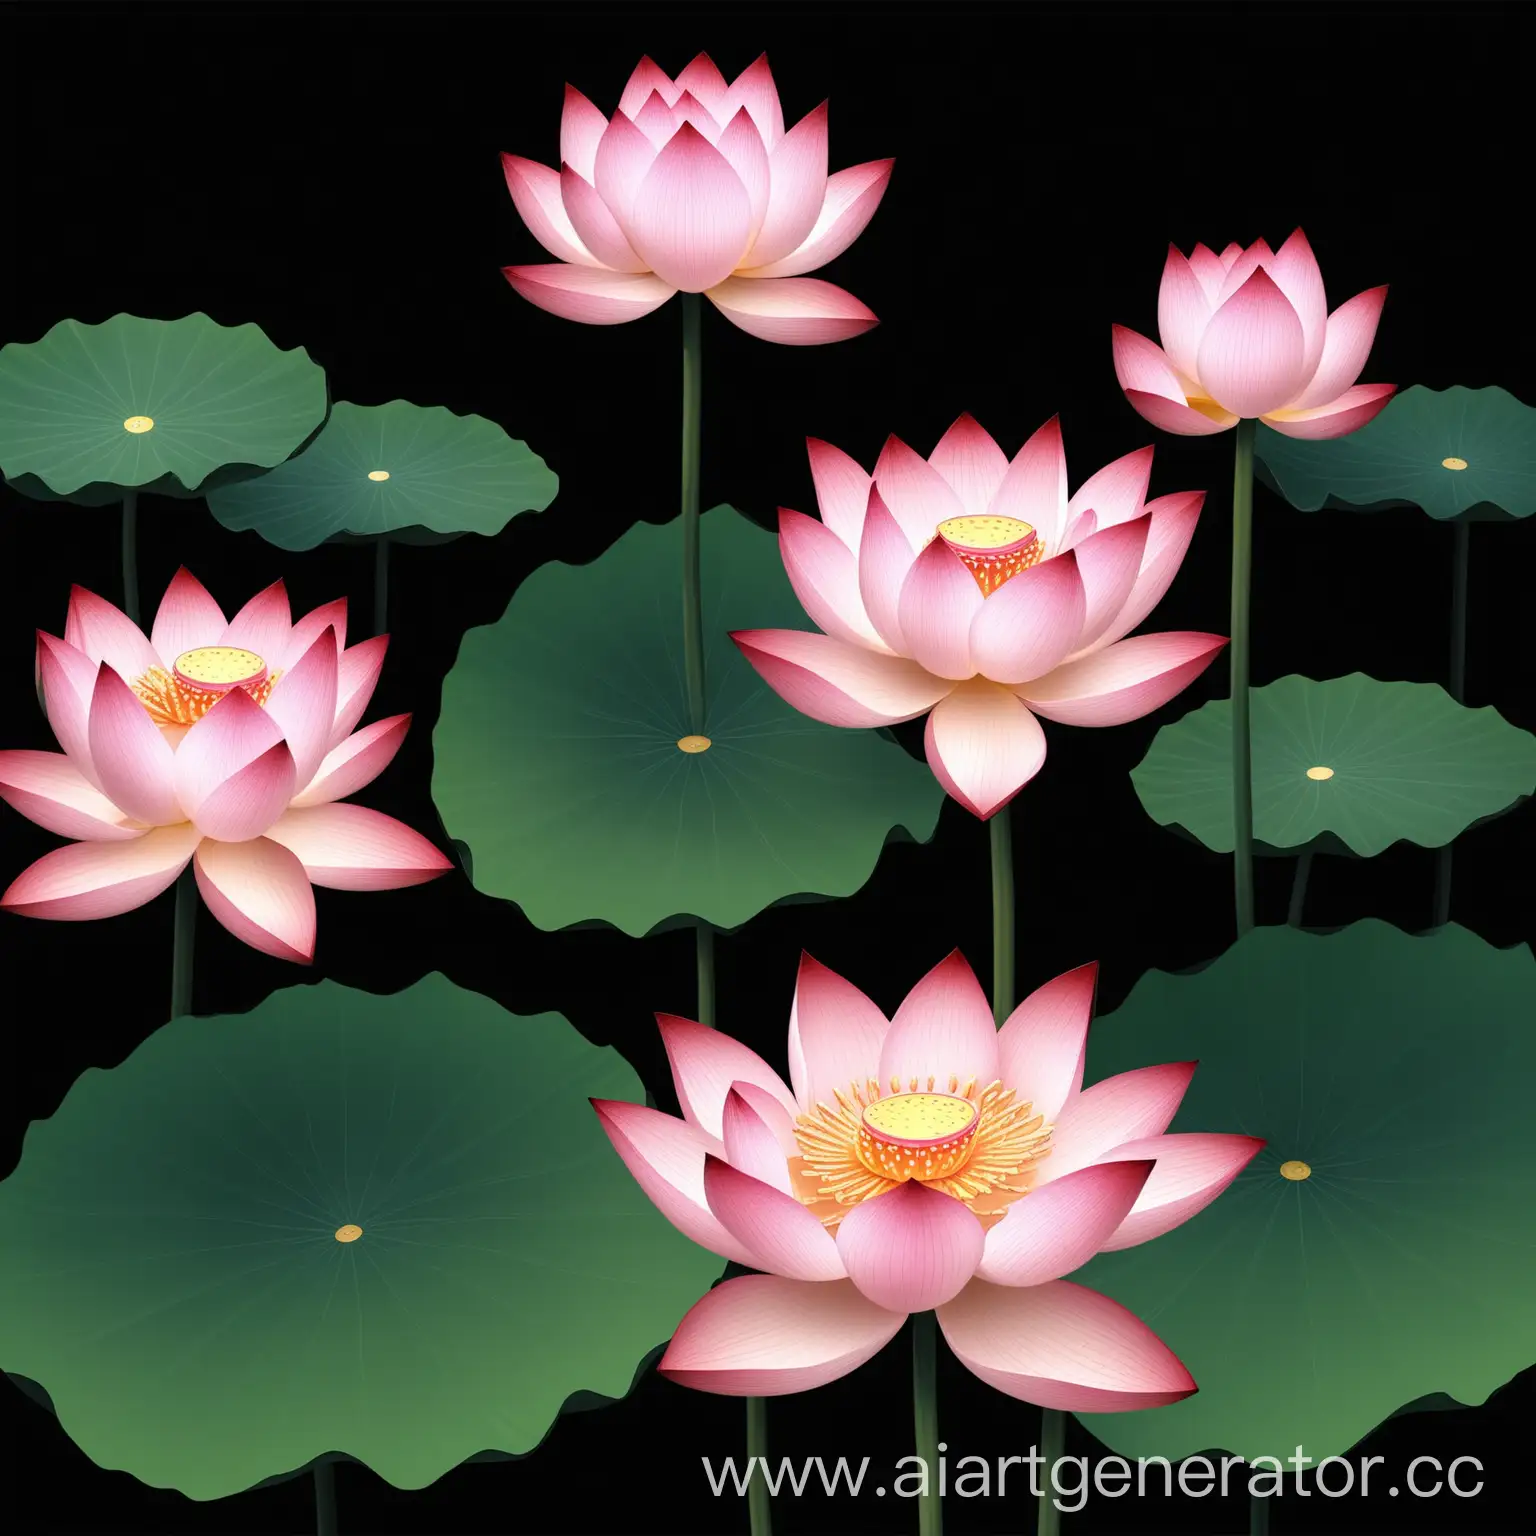 Blooming-Lotus-Flower-on-Black-Background